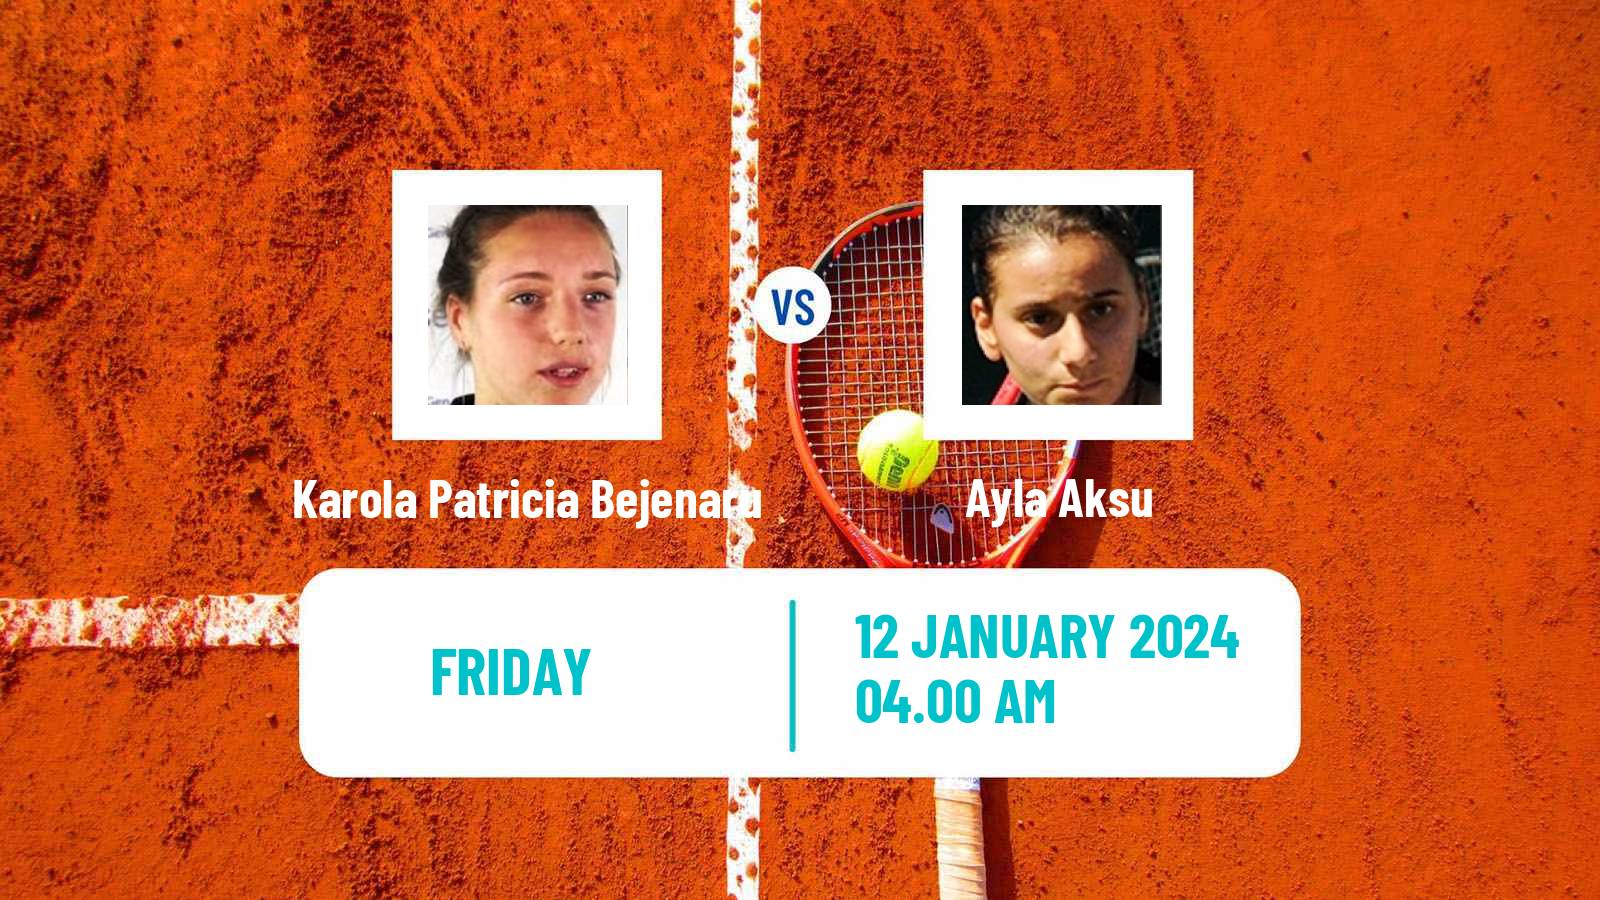 Tennis ITF W35 Antalya Women Karola Patricia Bejenaru - Ayla Aksu